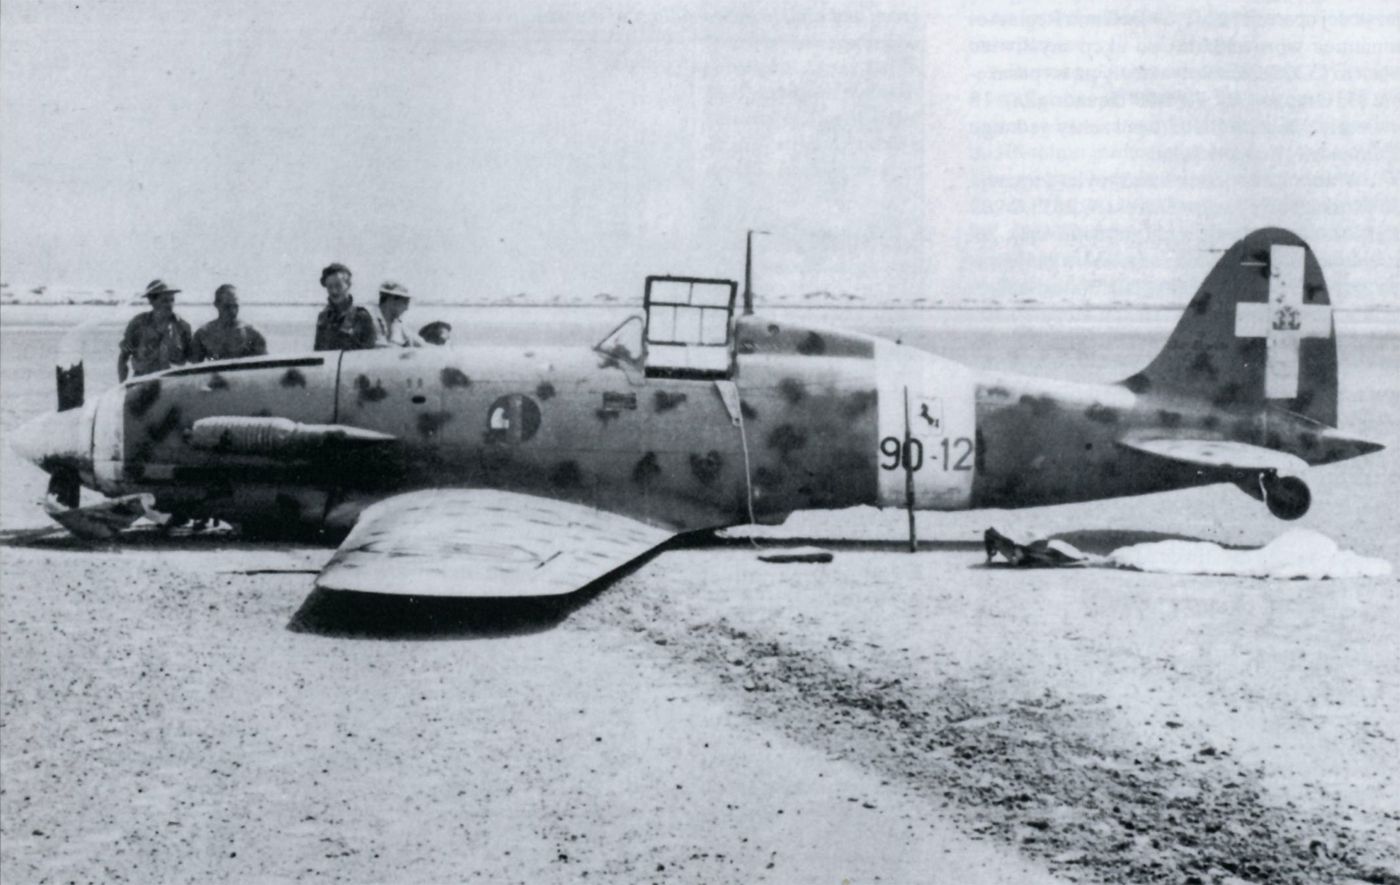 Macchi MC.202 Folgore, 4° Stromo, 10° Gruppo, 90° Squadriglia, no.90-12, 1942